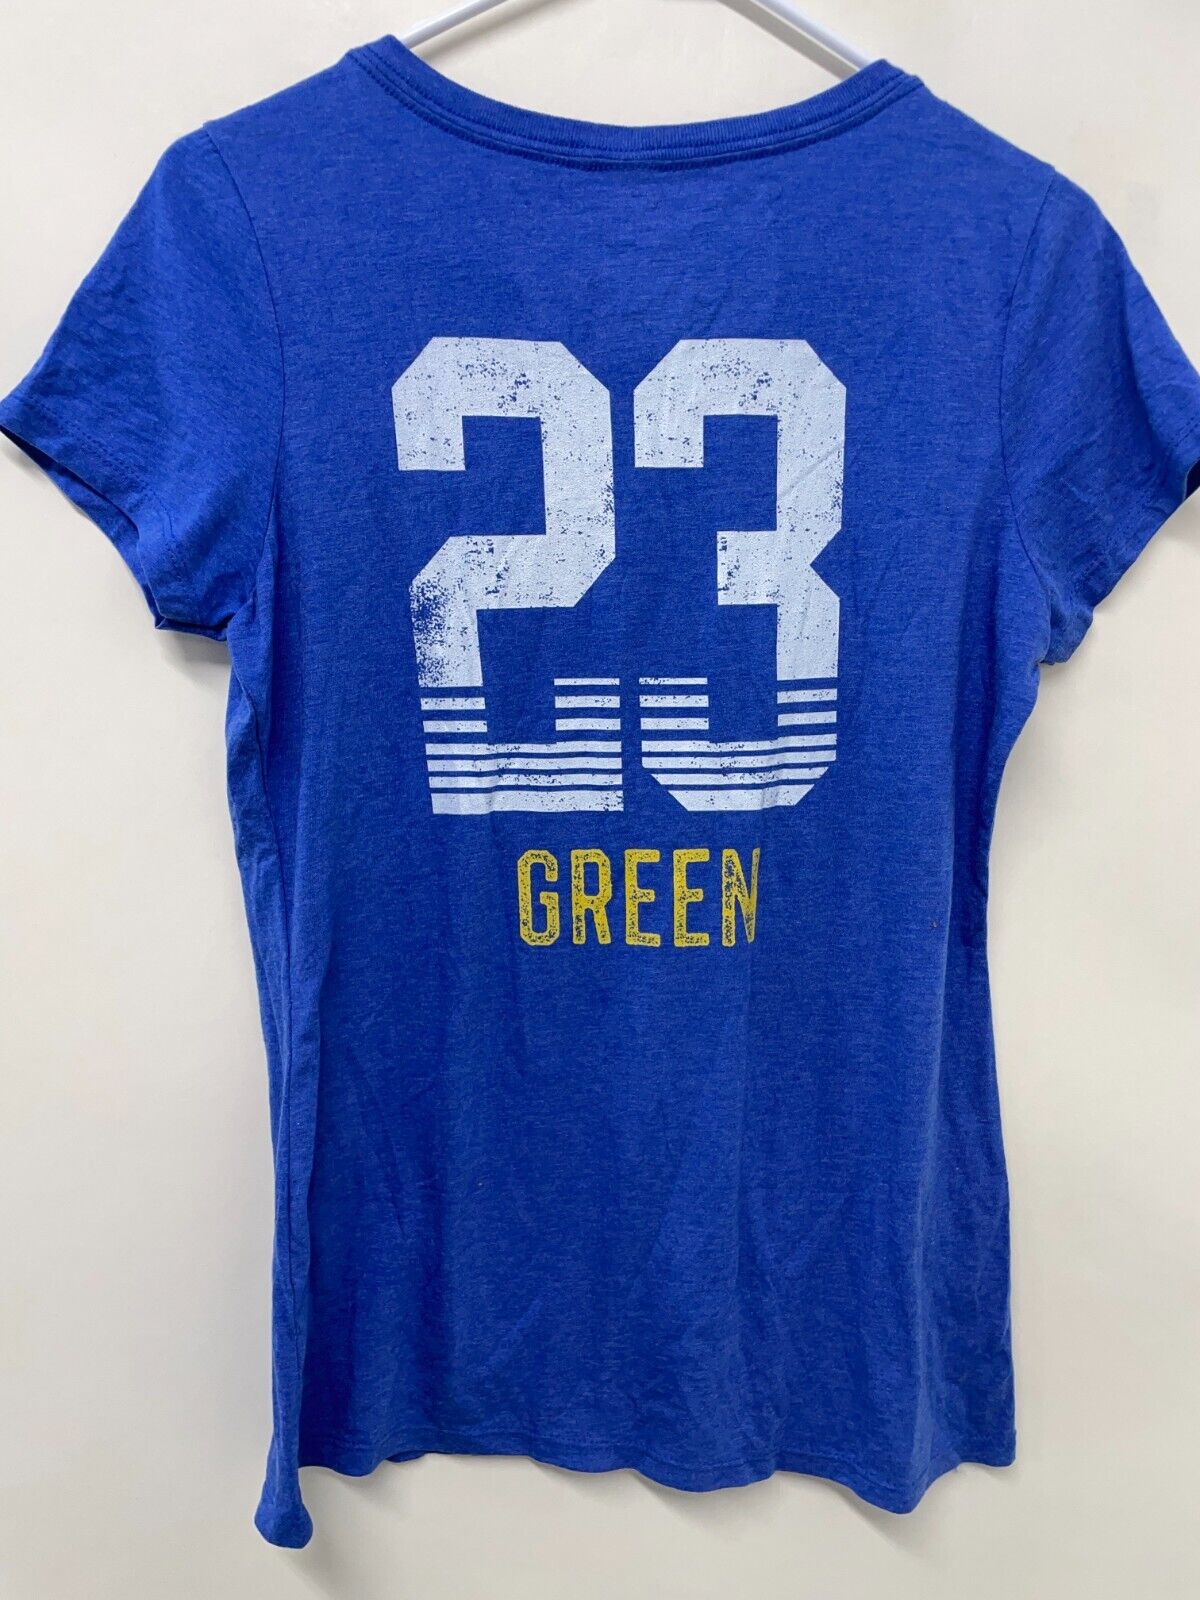 Fanatics Womens M Golden State Warriors T-Shirt Blue Draymond Green Tee Top NBA